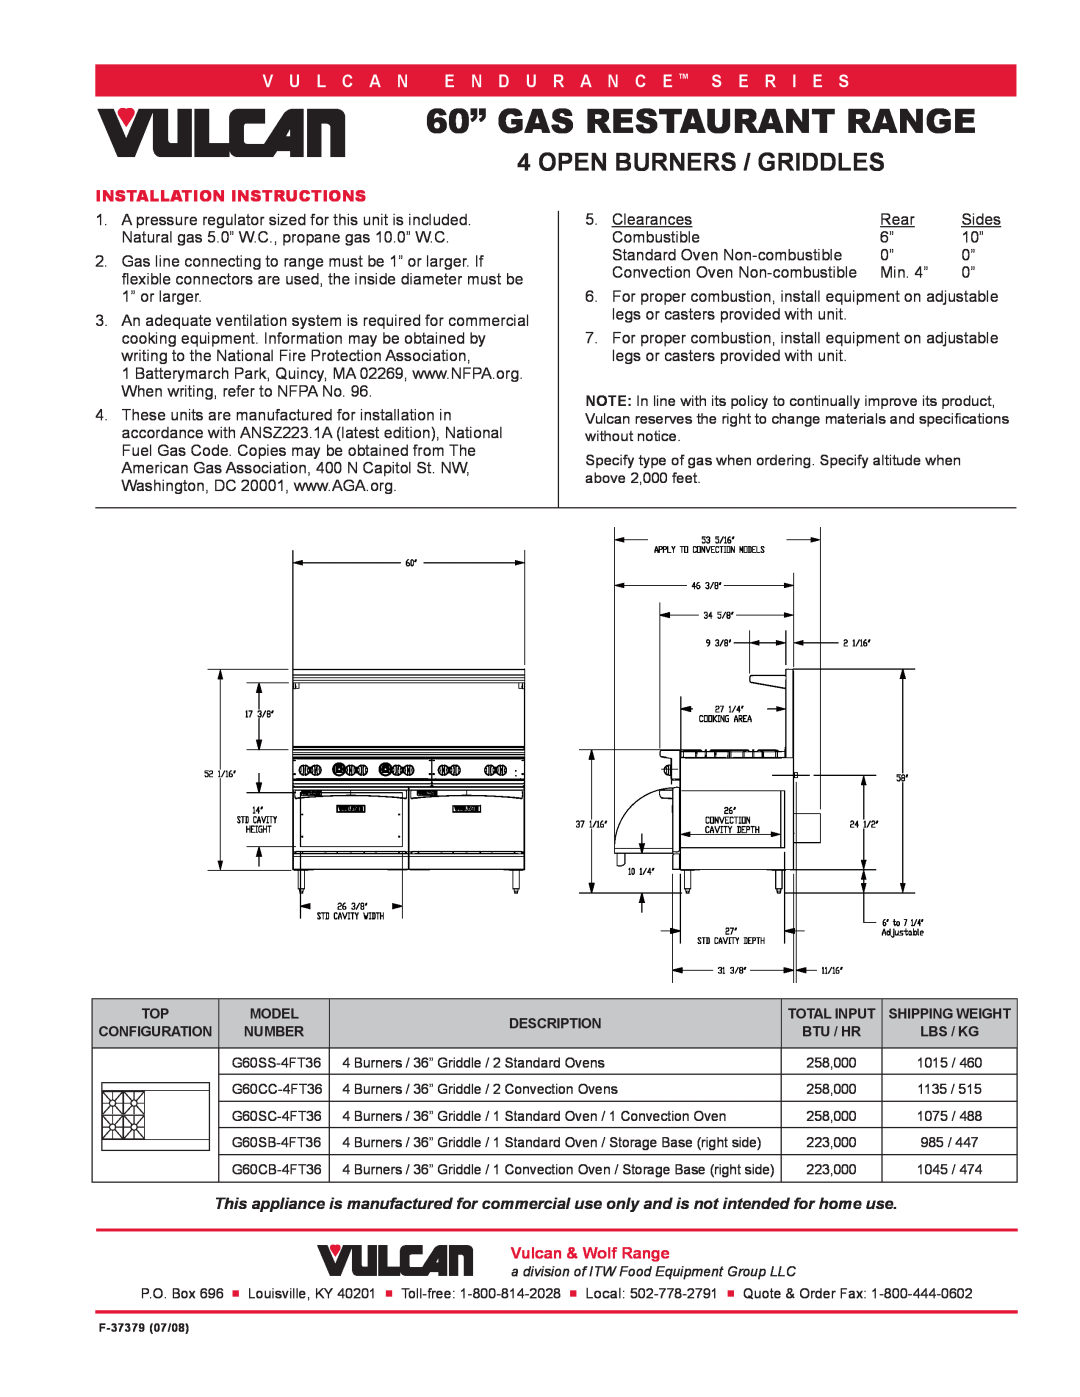 Vulcan-Hart G60SC-4FT36 Installation Instructions, 60” GAS RESTAURANT RANGE, Open Burners / Griddles, V U L C A N 